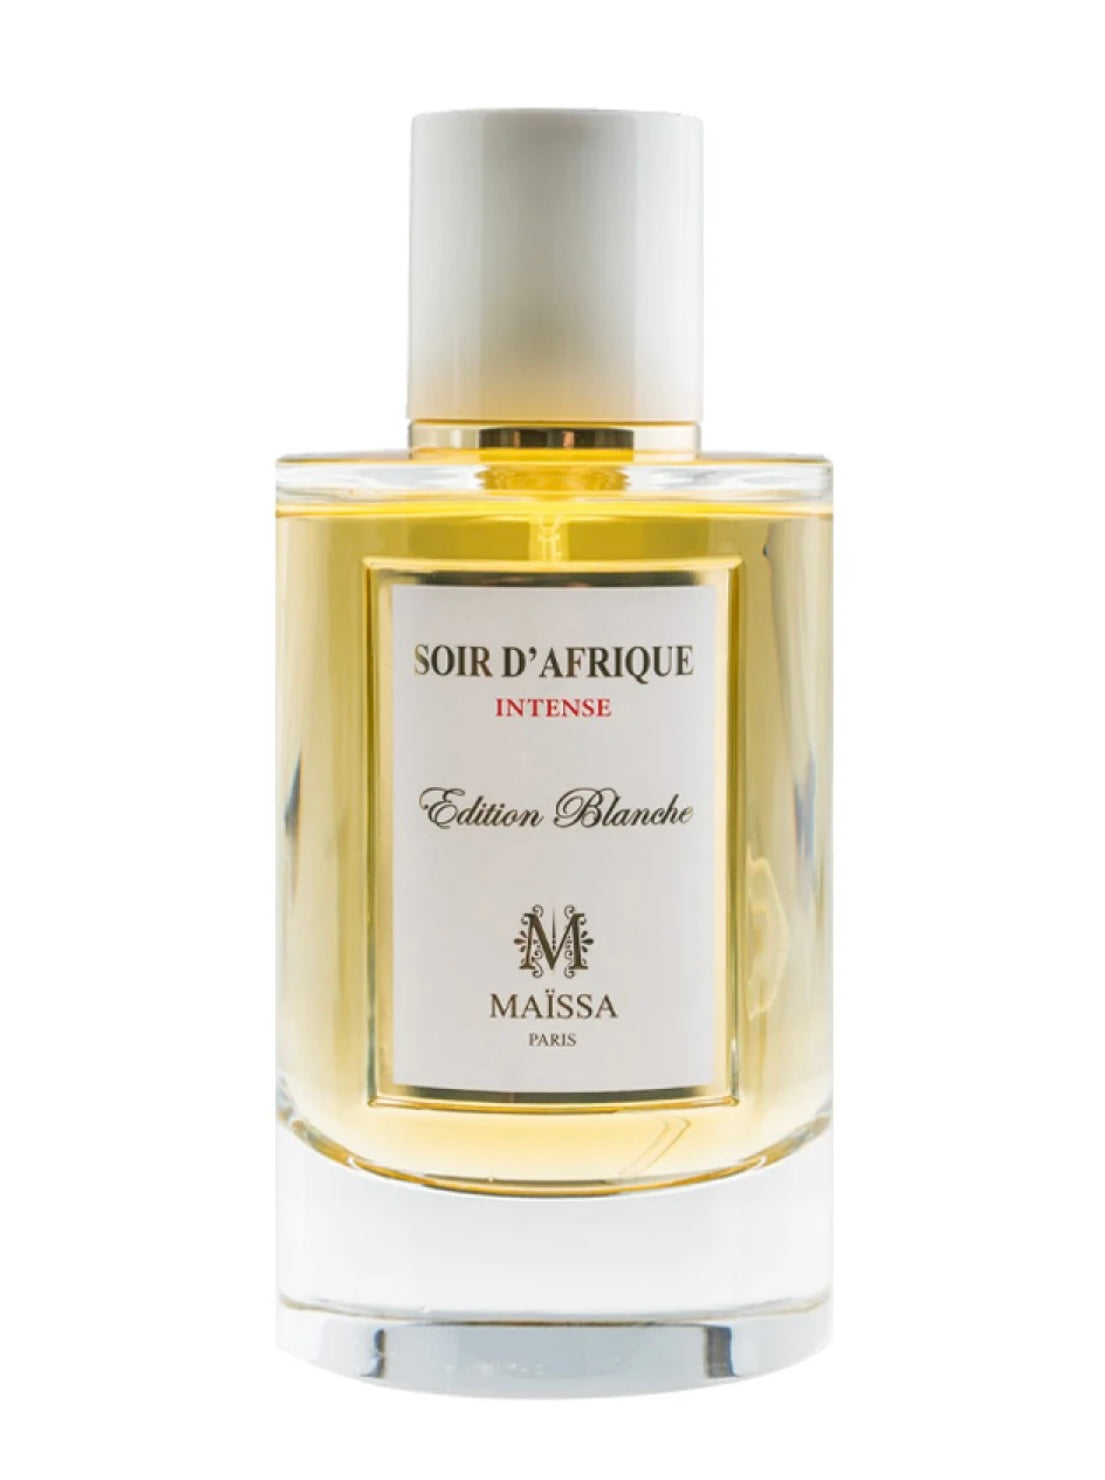 Maissa Paris Soir D’Afrique luxury fragrance